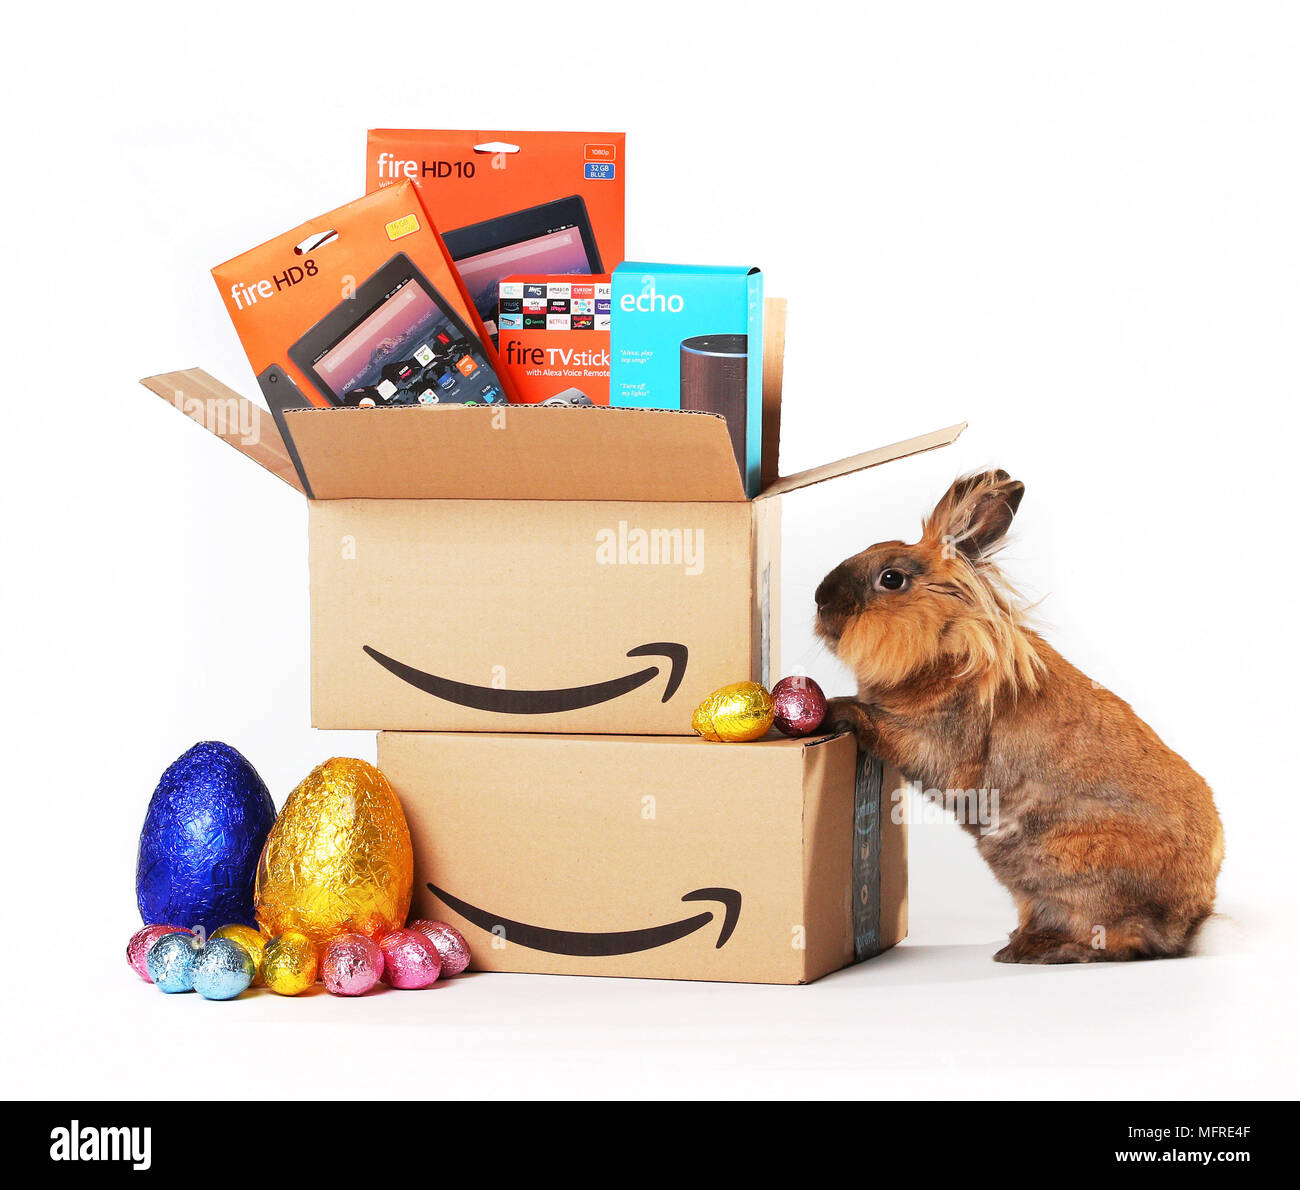 Der Amazon.co.uk frühe Ostern Verkauf läuft bis 23:59 Uhr am Montag, den  26. März, während der Verkauf von neuen 